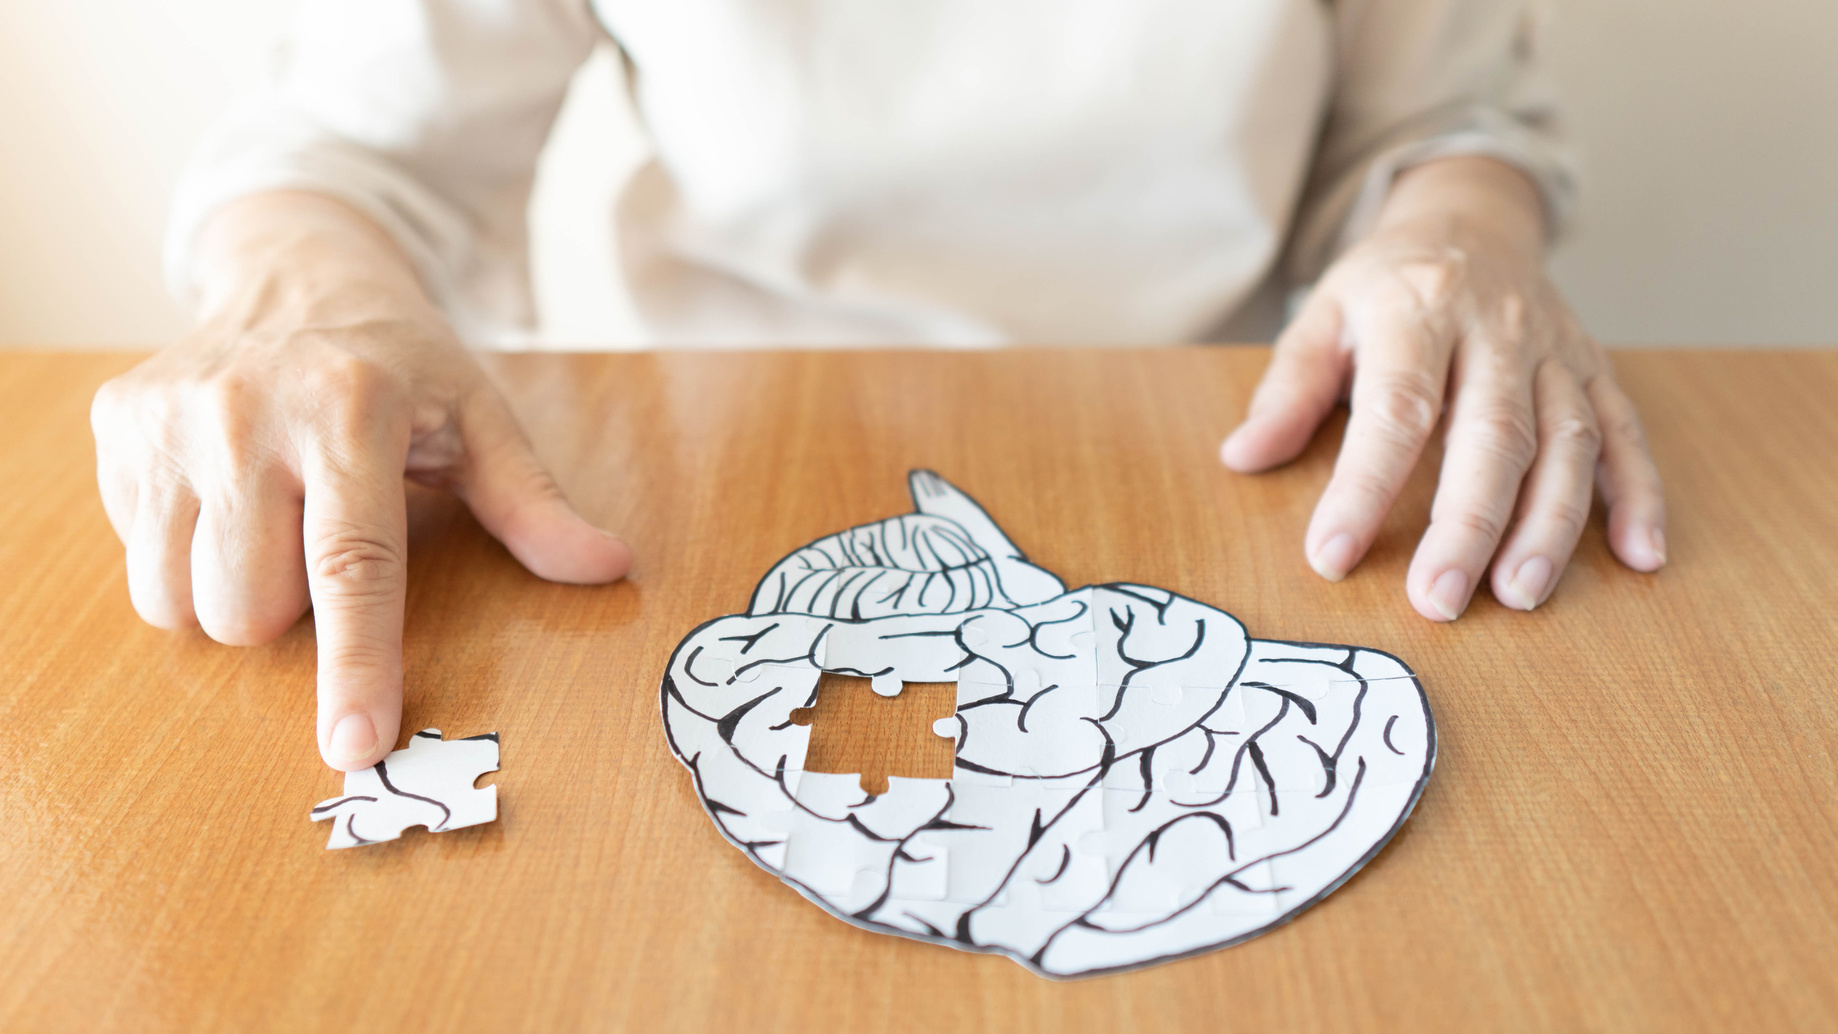 La maladie d'Alzheimer est une forme de démence qui pourrait toucher jusqu'à 152 millions de personnes selon l'OMS. © Orawan, Fotolia